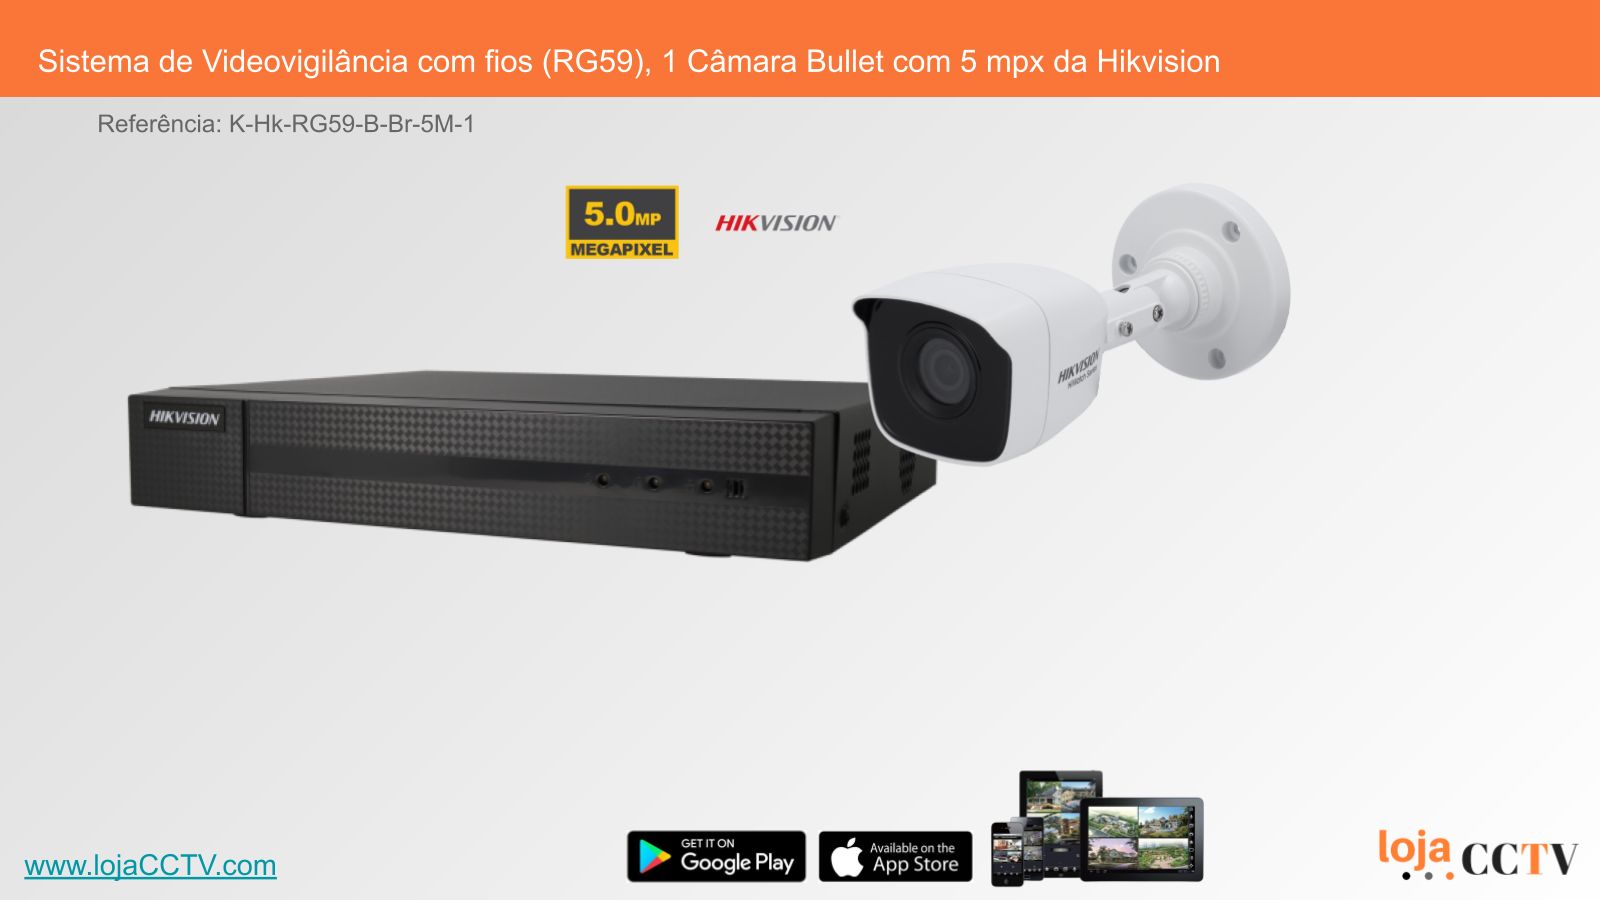 Videovigilância com fios (RG59) 1 Câmara Tubular 5 mpx, Hikvision